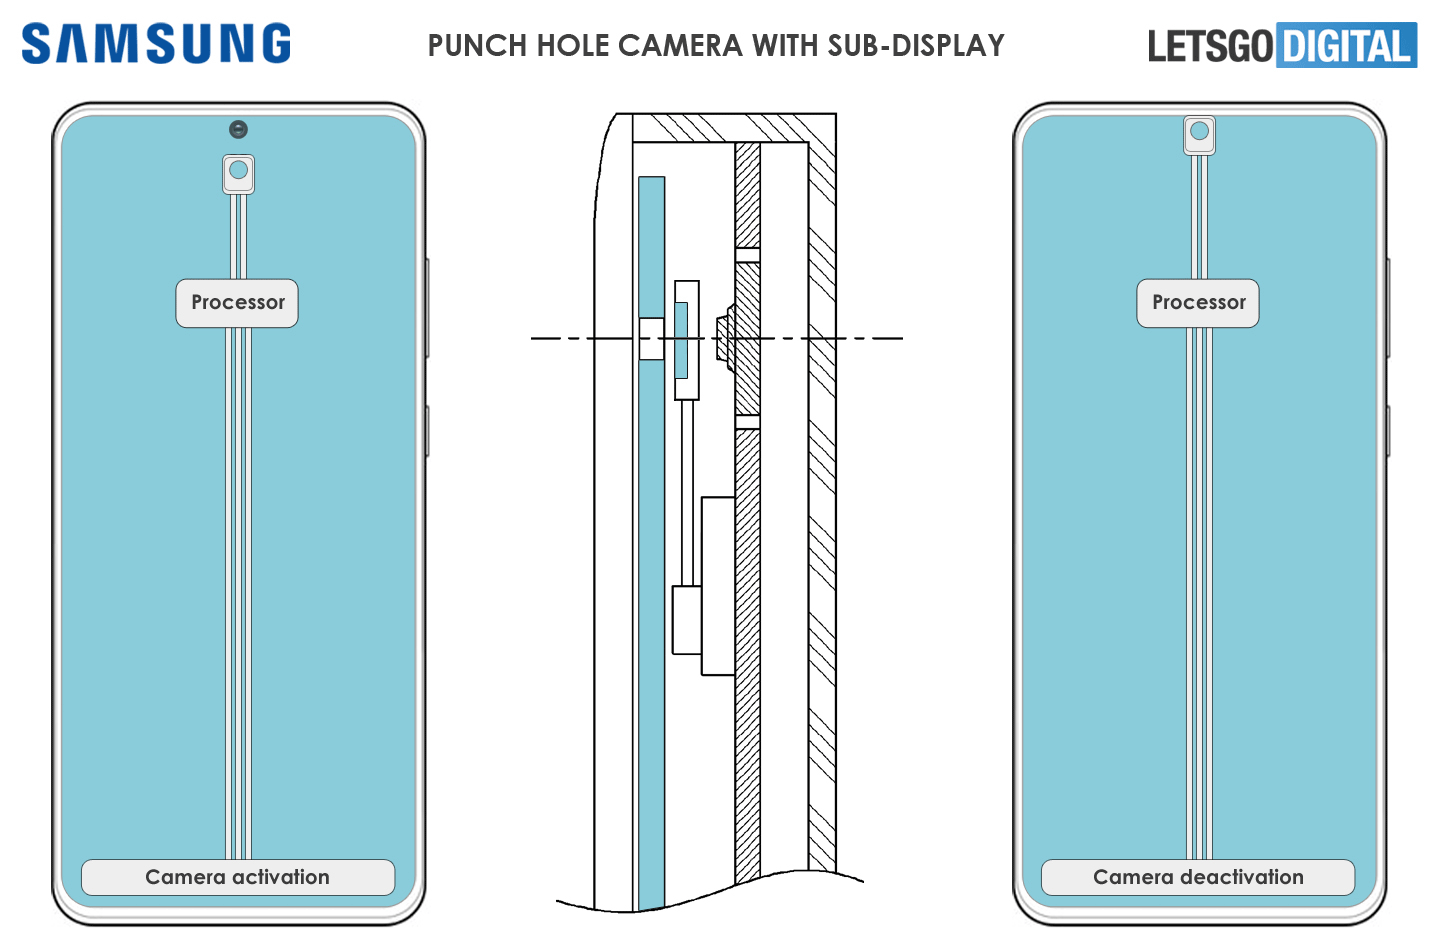 Samsung Galaxy S22 aparat do selfie kiedy premiera patent plotki przecieki